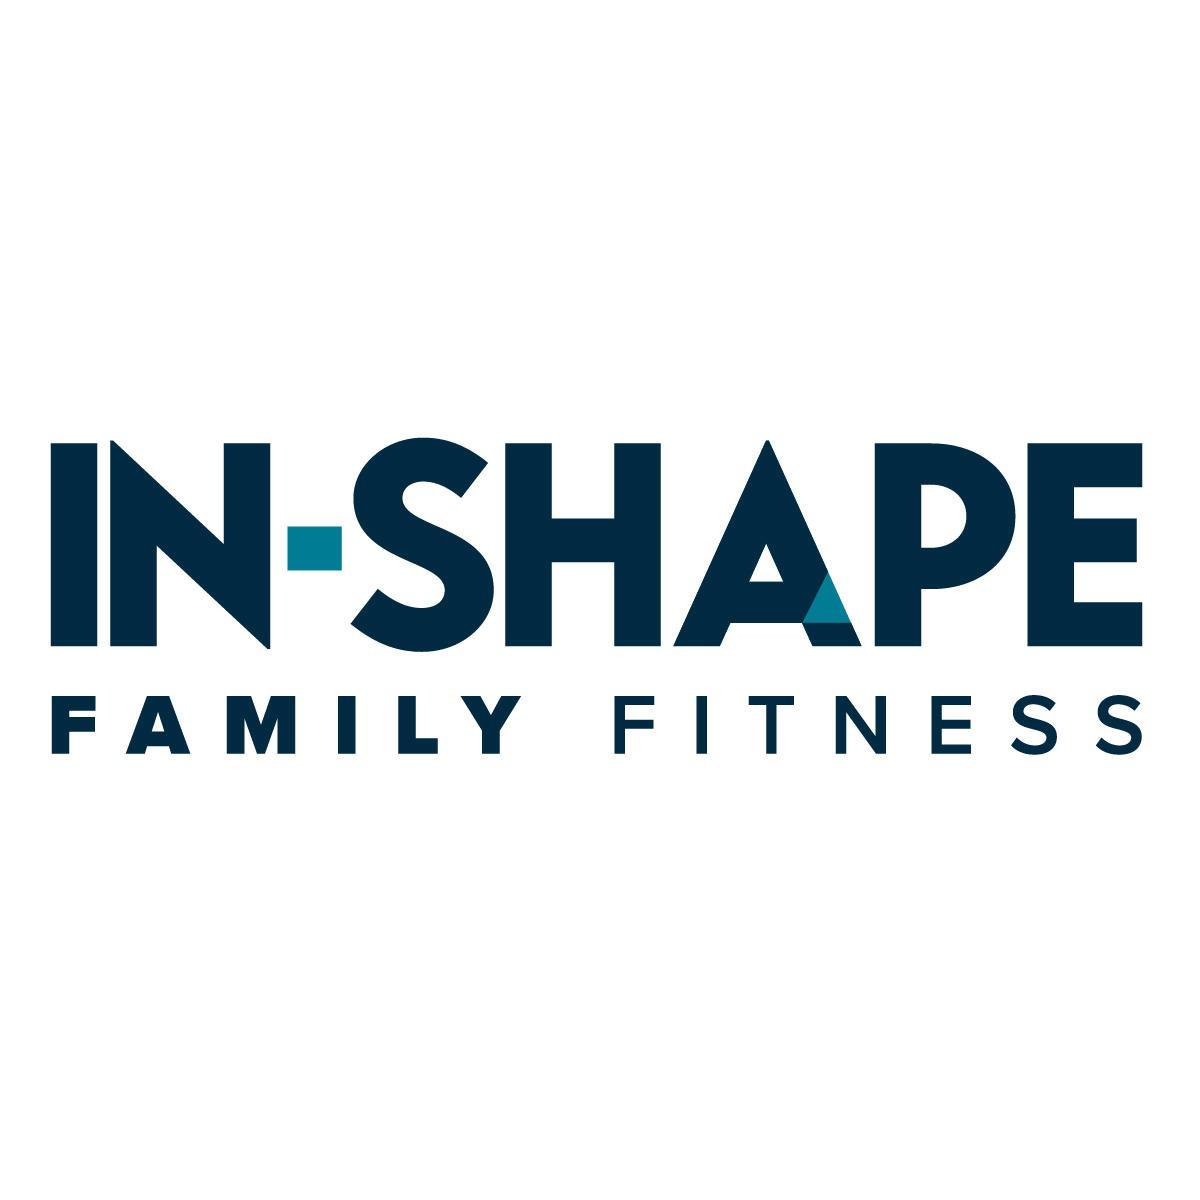 In-Shape Family Fitness - Sacramento, CA 95841 - (916)339-3800 | ShowMeLocal.com